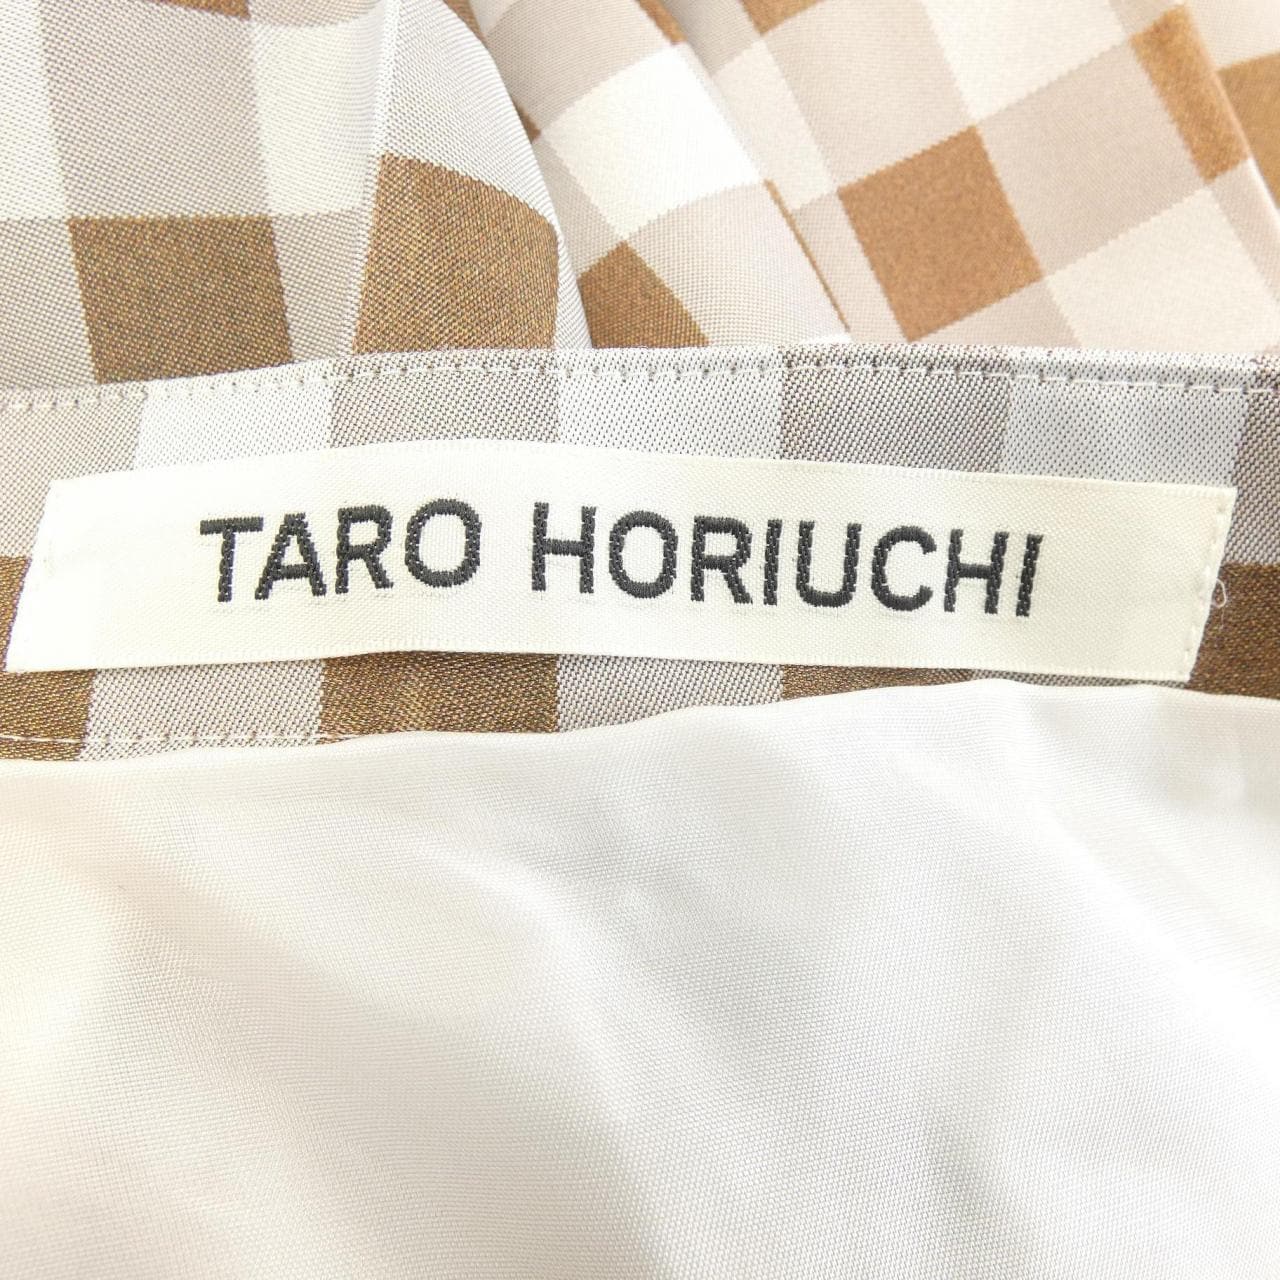 Tarohoriuchi TARO HORIUCHI Skirt